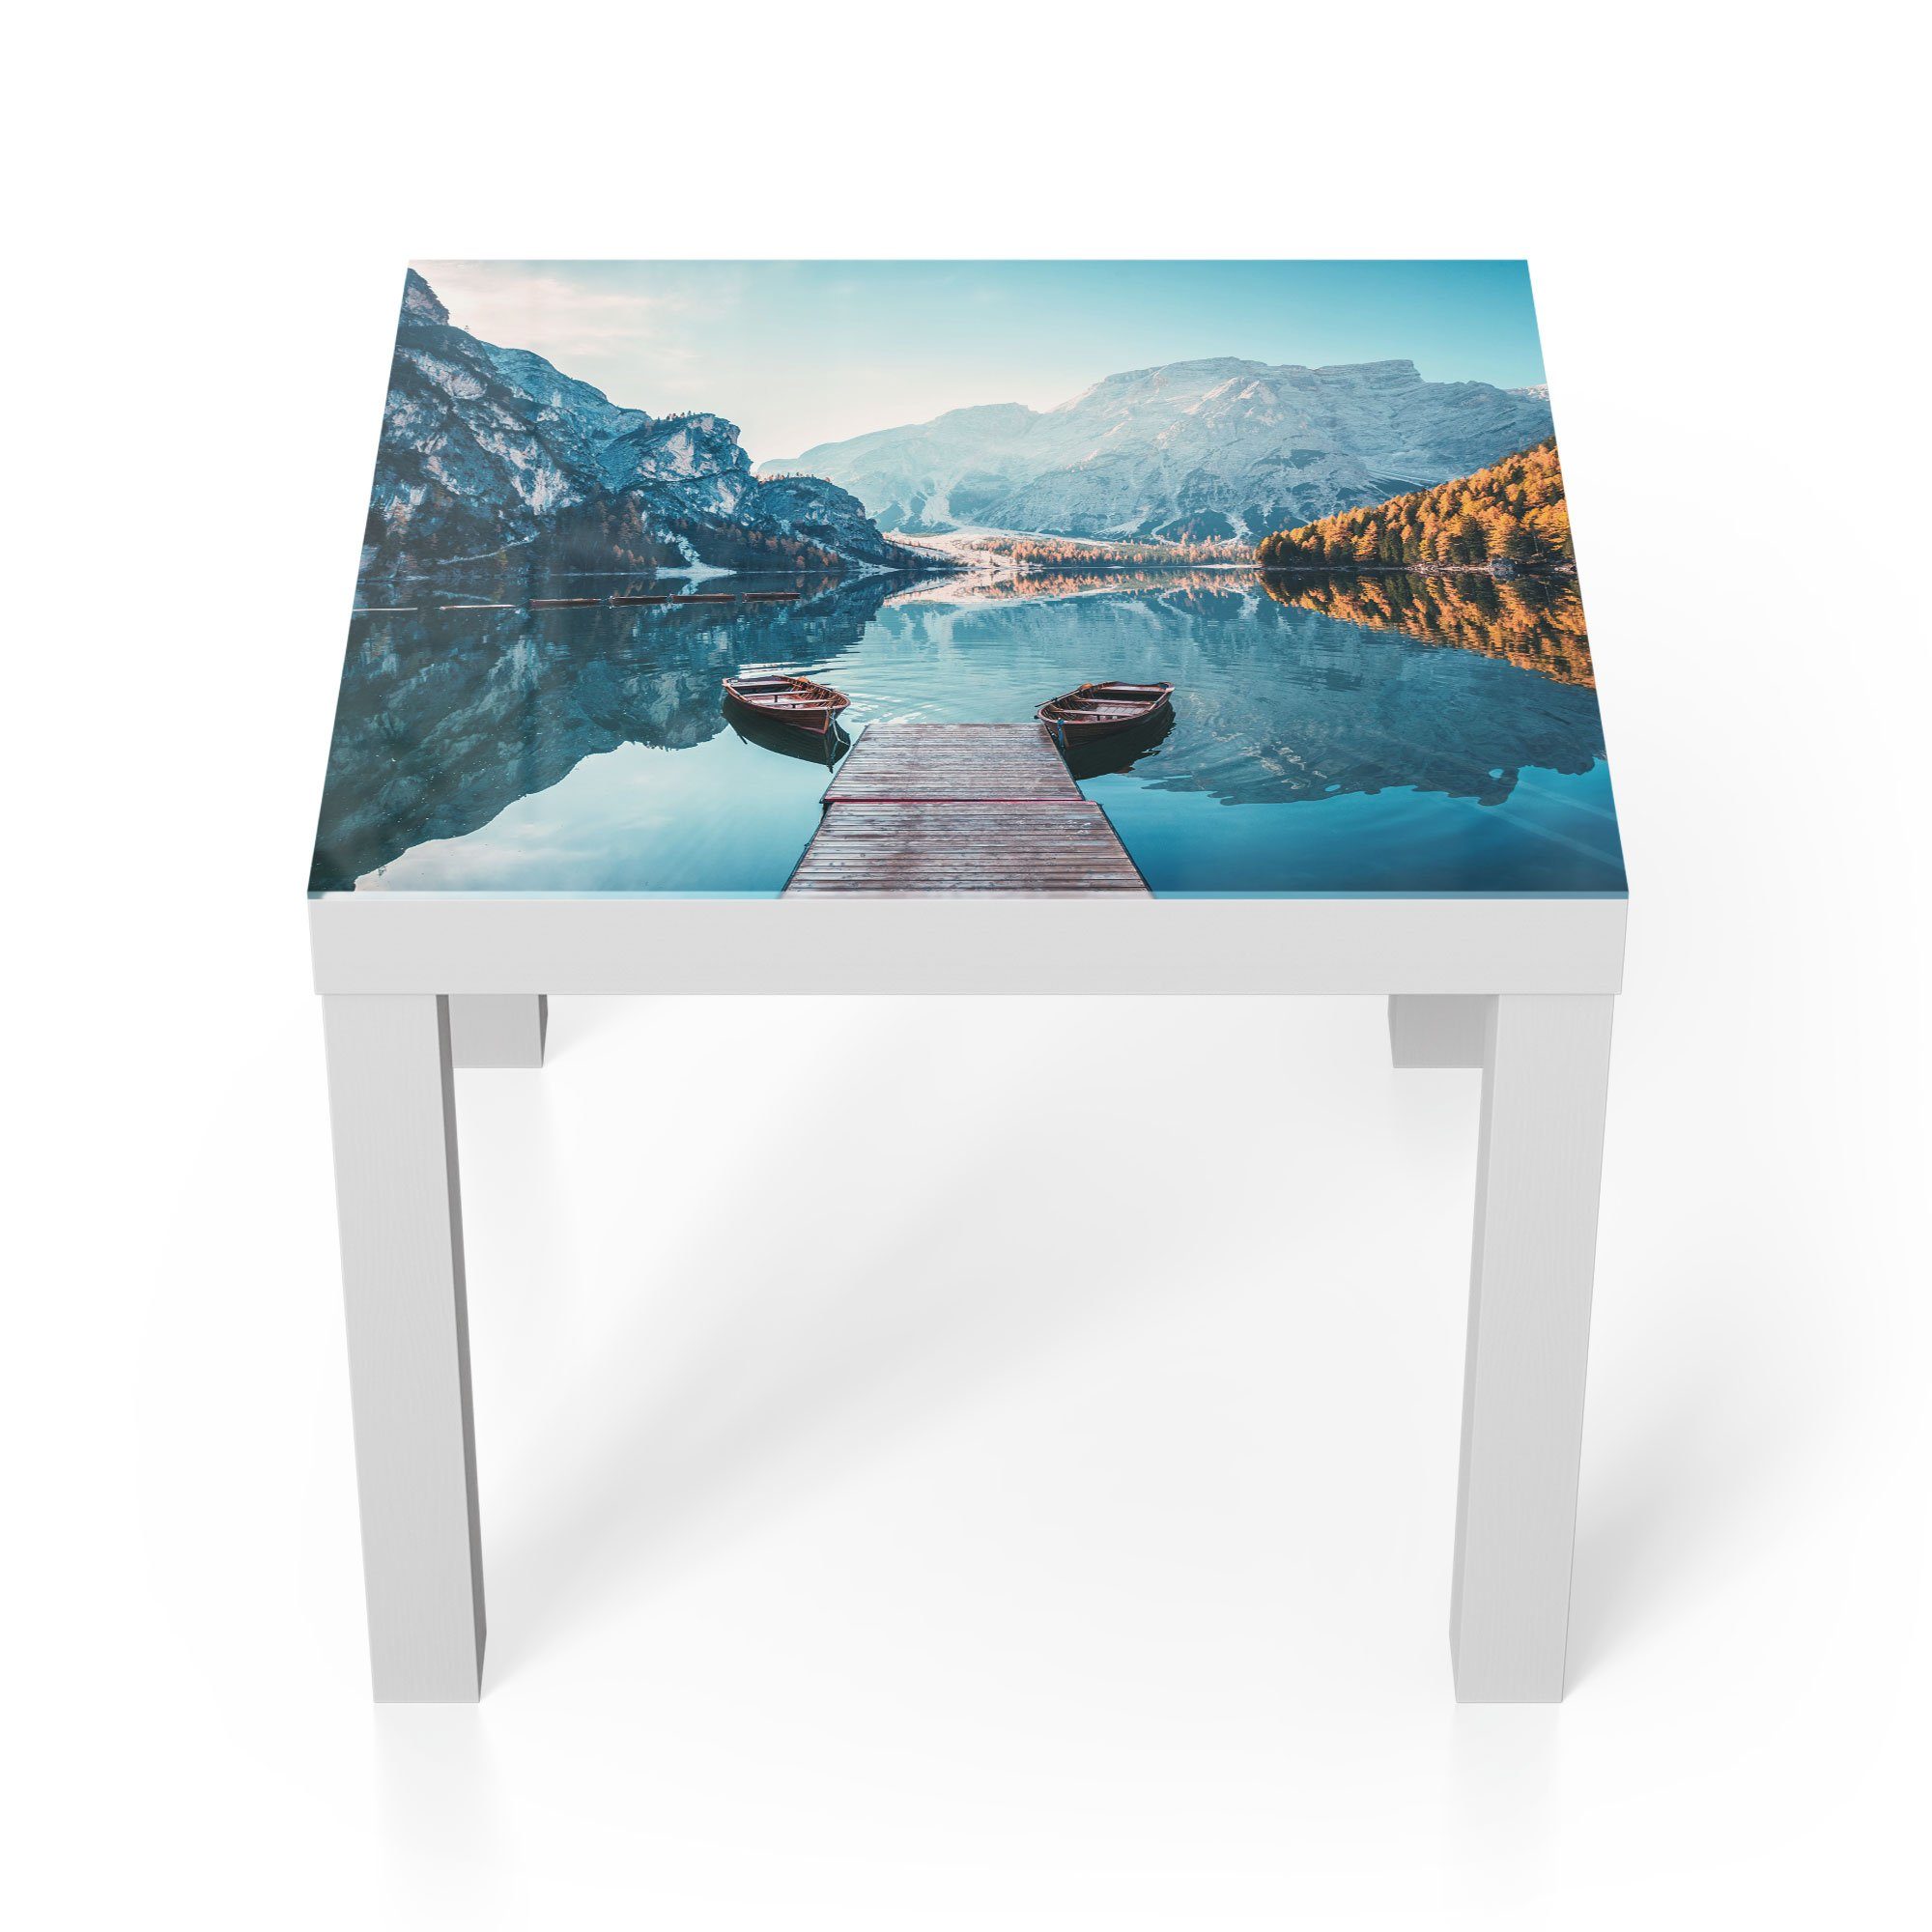 DEQORI Couchtisch 'Blick auf Lago di Braies', Glas Beistelltisch Glastisch modern Weiß